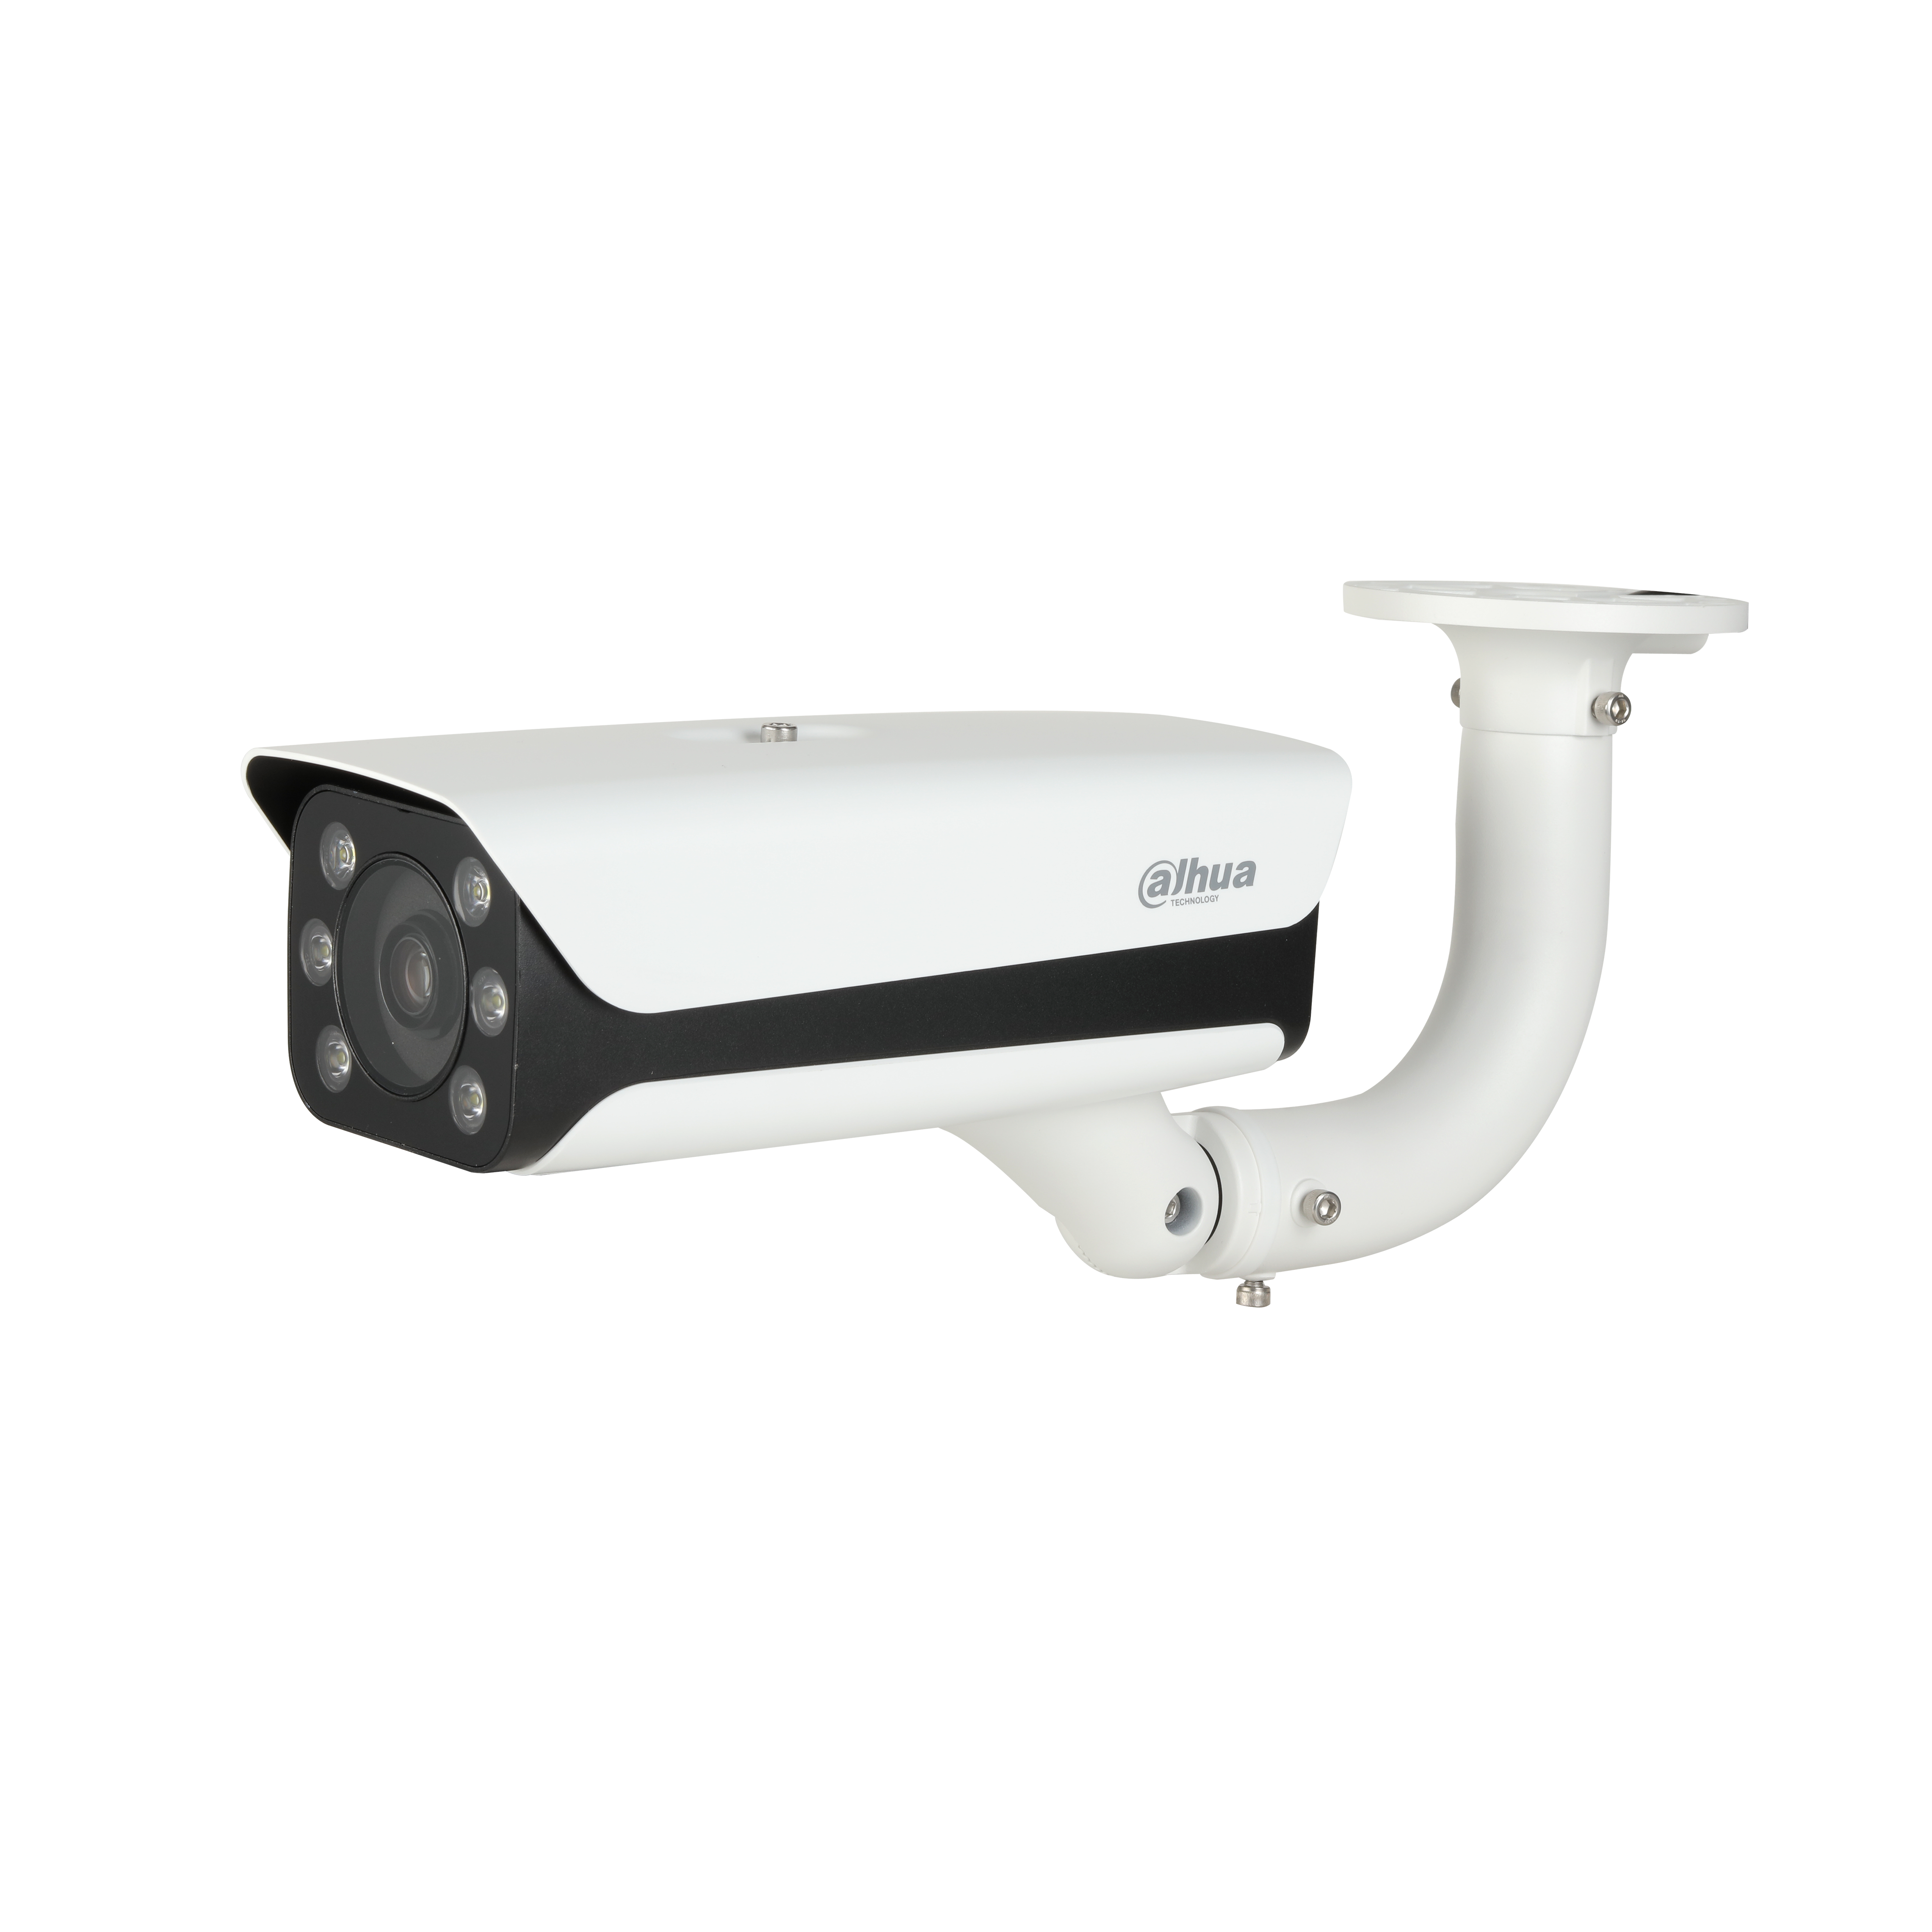 DAHUA IPC-HFW8242E-Z20FD-IRA-LED 2MP Starlight Bullet Network Camera